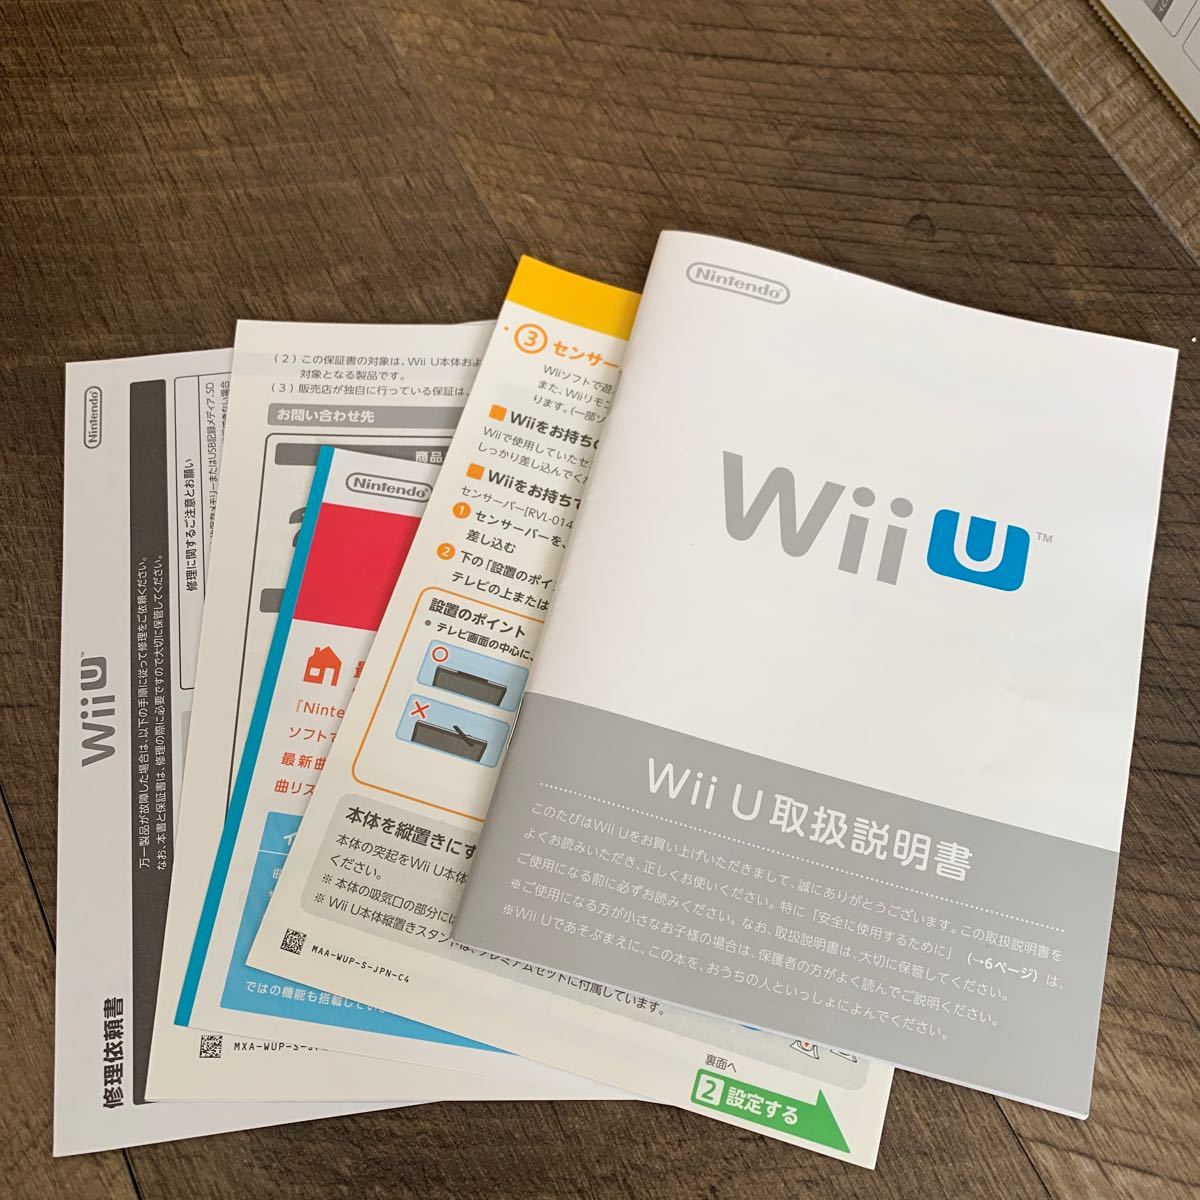 WiiU PREMIUM SET シロ  Wiiリモコン&ヌンチャク+センサーバー付 任天堂 Nintendo